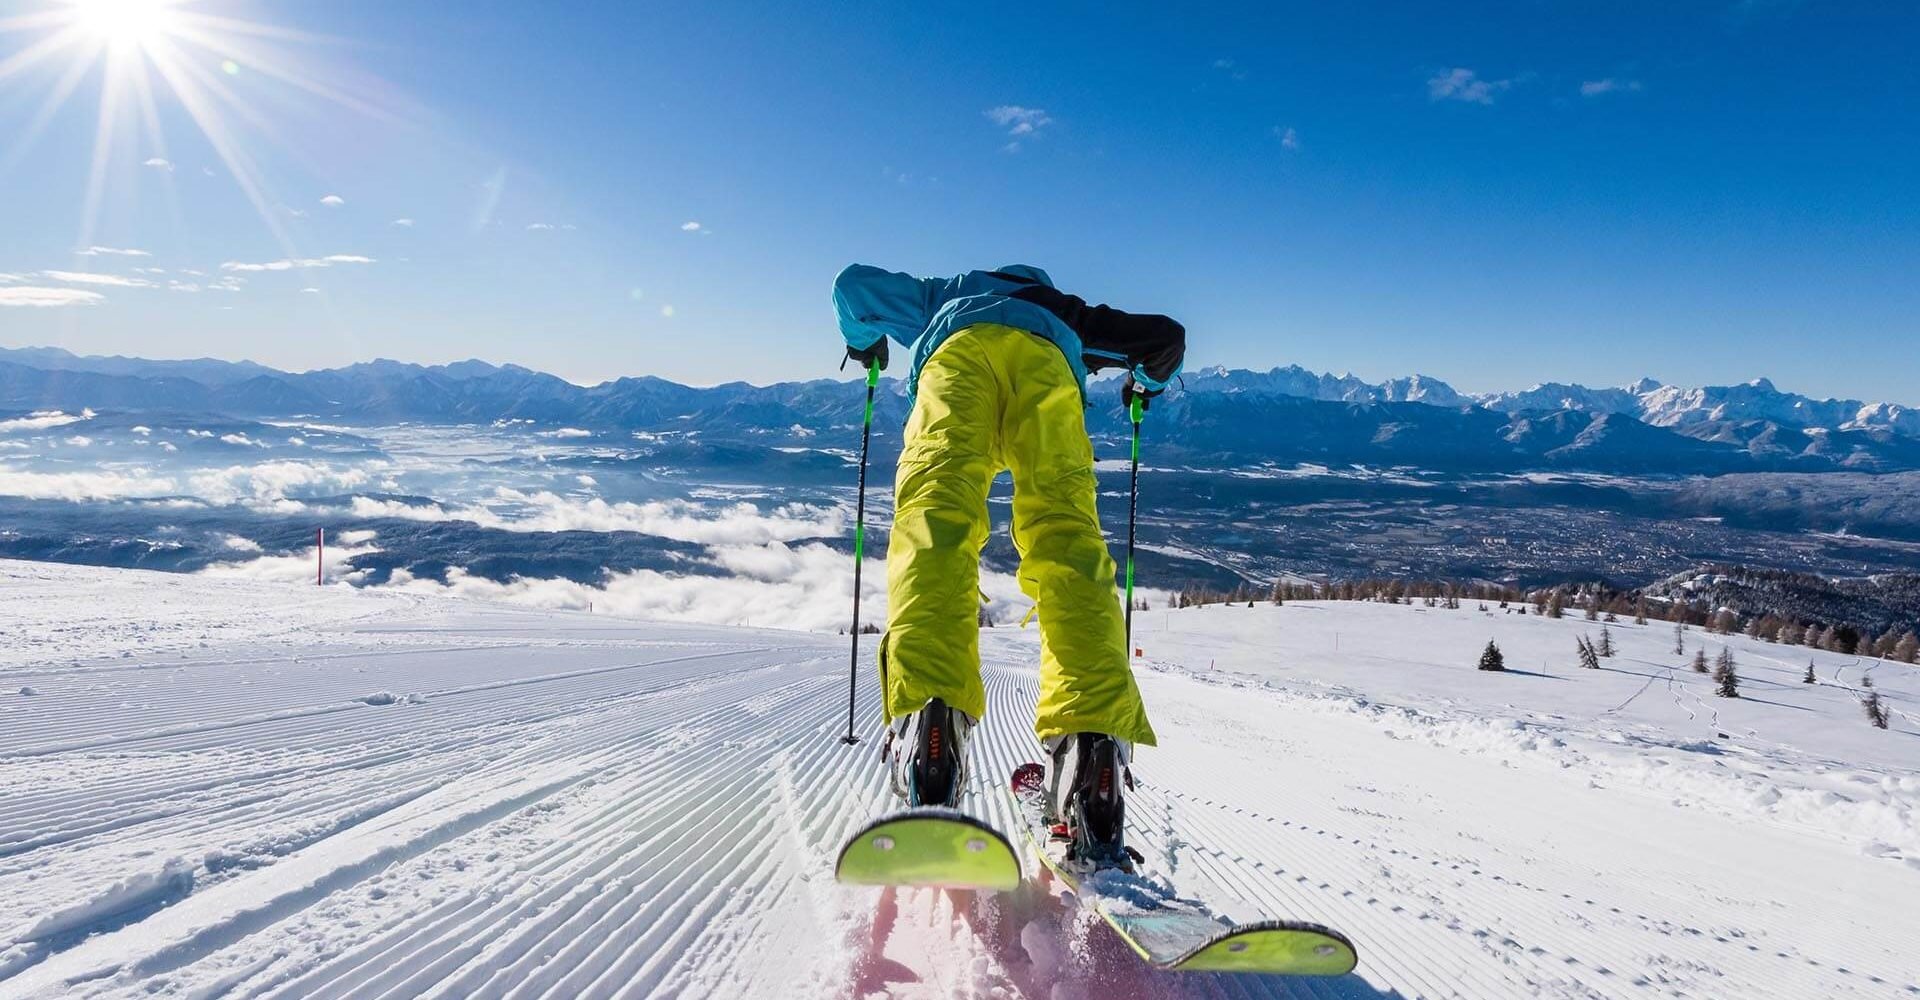 Winterurlaub in Kärnten - Skifahren Rodeln Winterwandern Langlauf - Schneevergnügen auf der Gerlitzen Alpe (8)